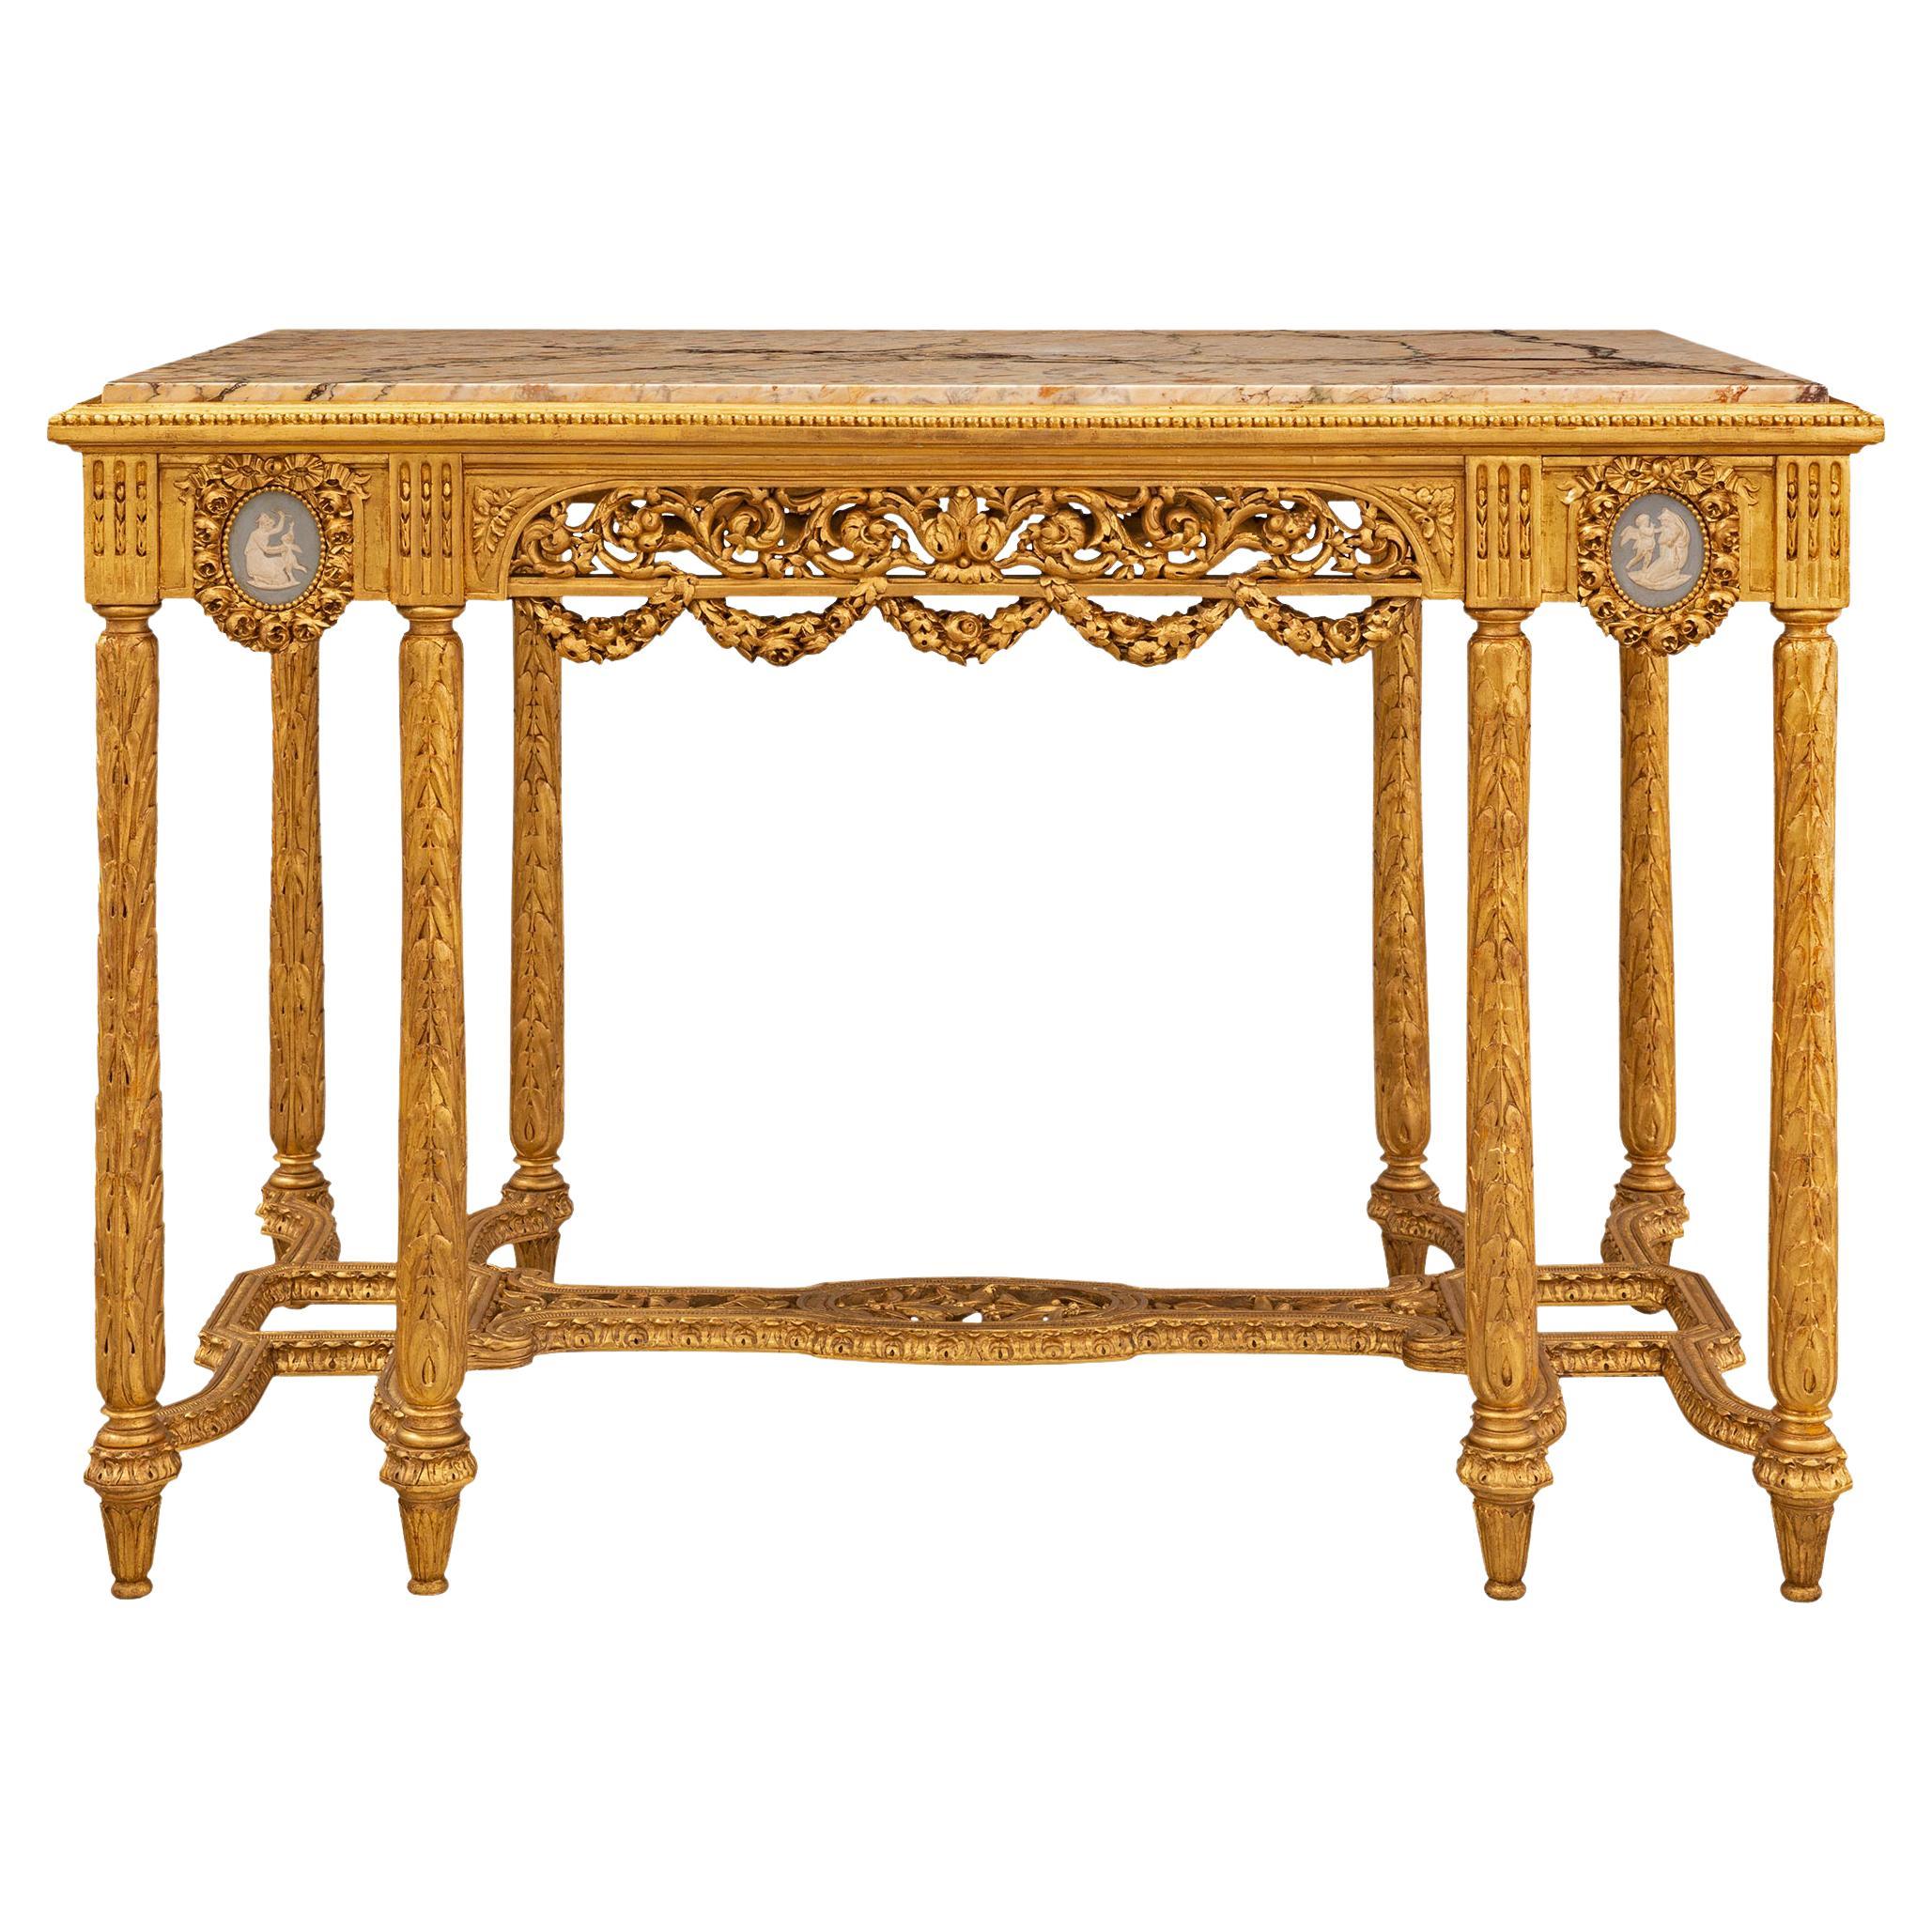 Table centrale de style Louis XVI anglo-français du 19ème siècle